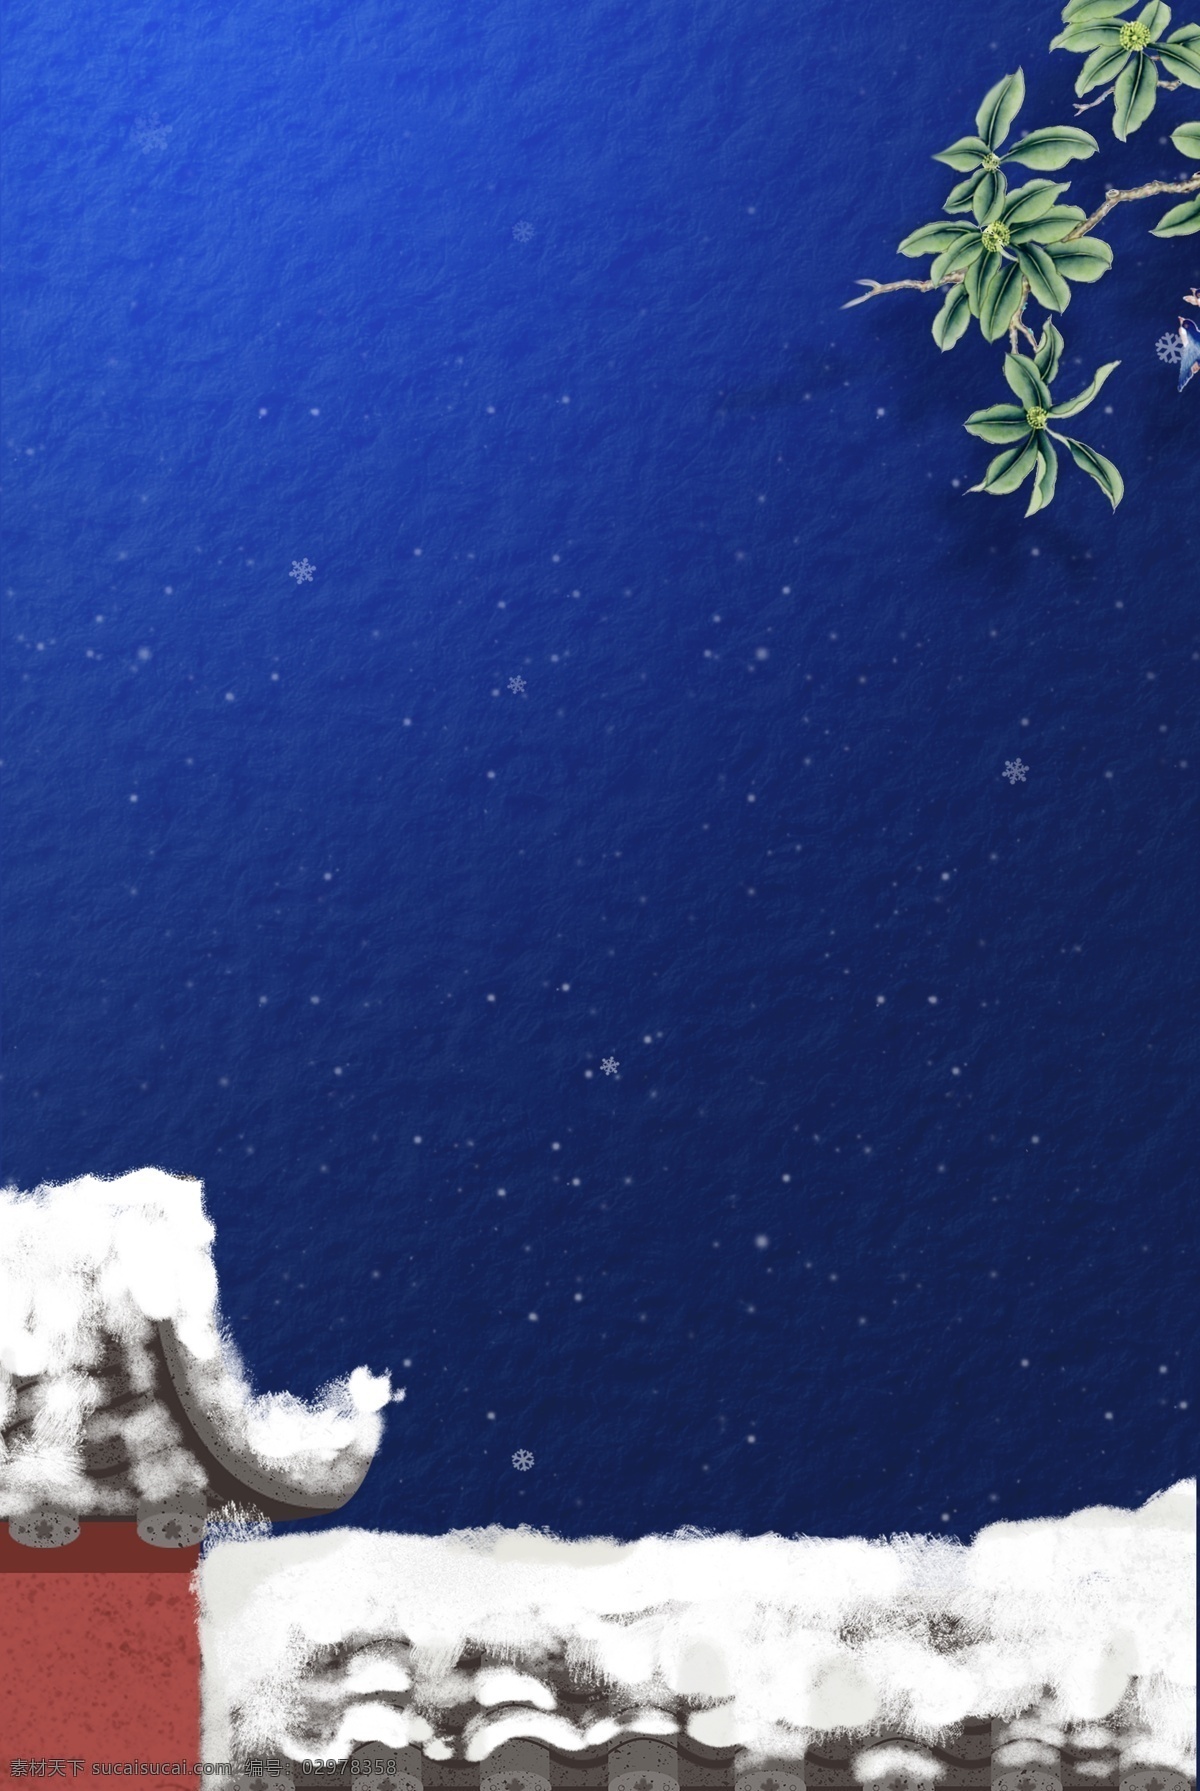 蓝色 新年 快乐 插画 背景 下雪 冬天 冬至节气 传统节气 24节气冬天 冬至背景图 房屋 新年快乐